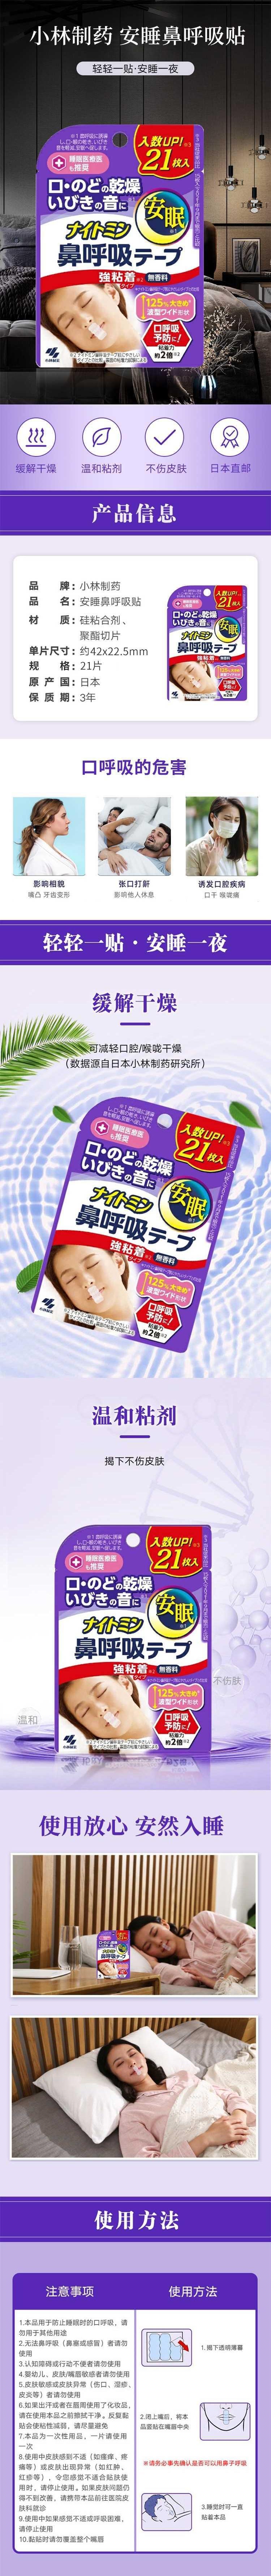 【日本直邮】KOBAYASHI小林制药 安睡鼻呼吸贴 帮助鼻呼吸 增量版21枚入